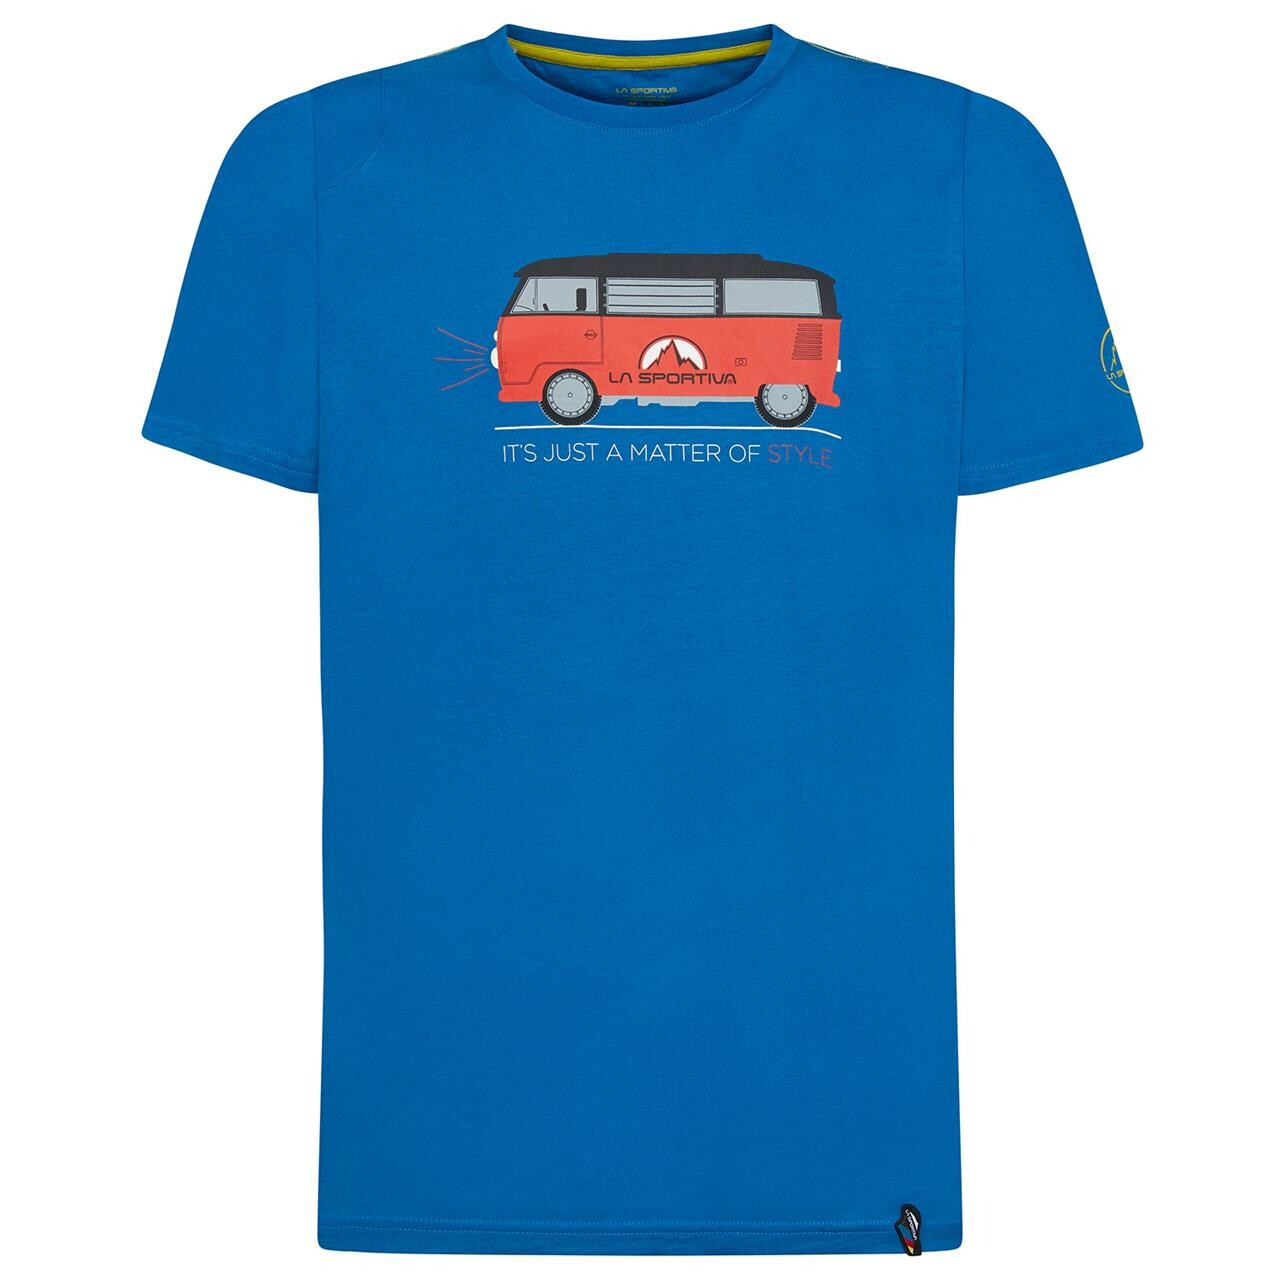 Billede af La Sportiva Mens Van T-shirt (Blå (NEPTUNE) Medium)